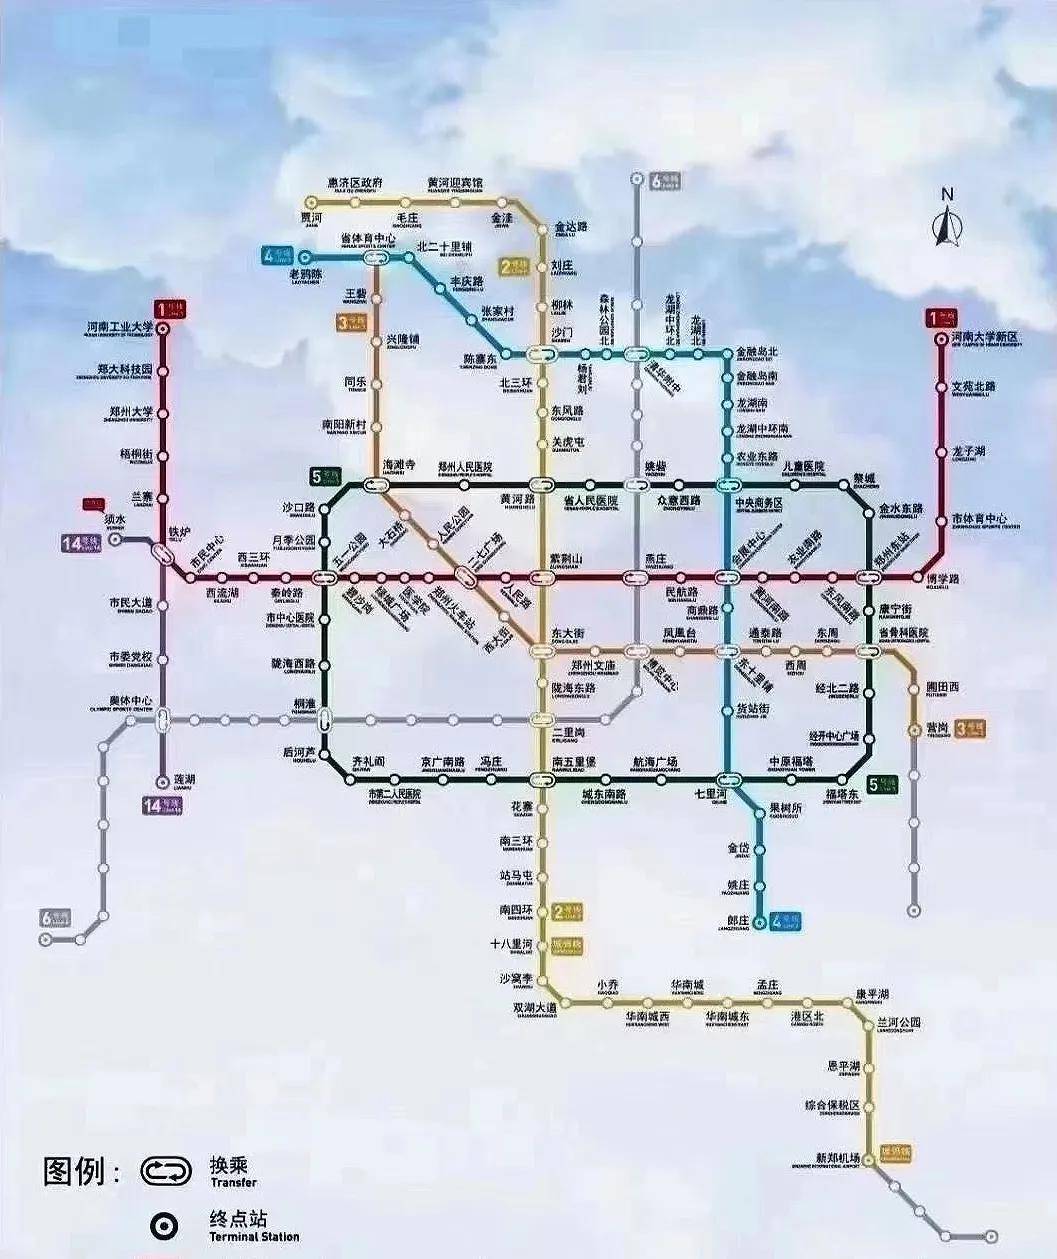 年末之际,郑州轨道交通喜讯不断,自轨道交通3号线和4号线26日开通后